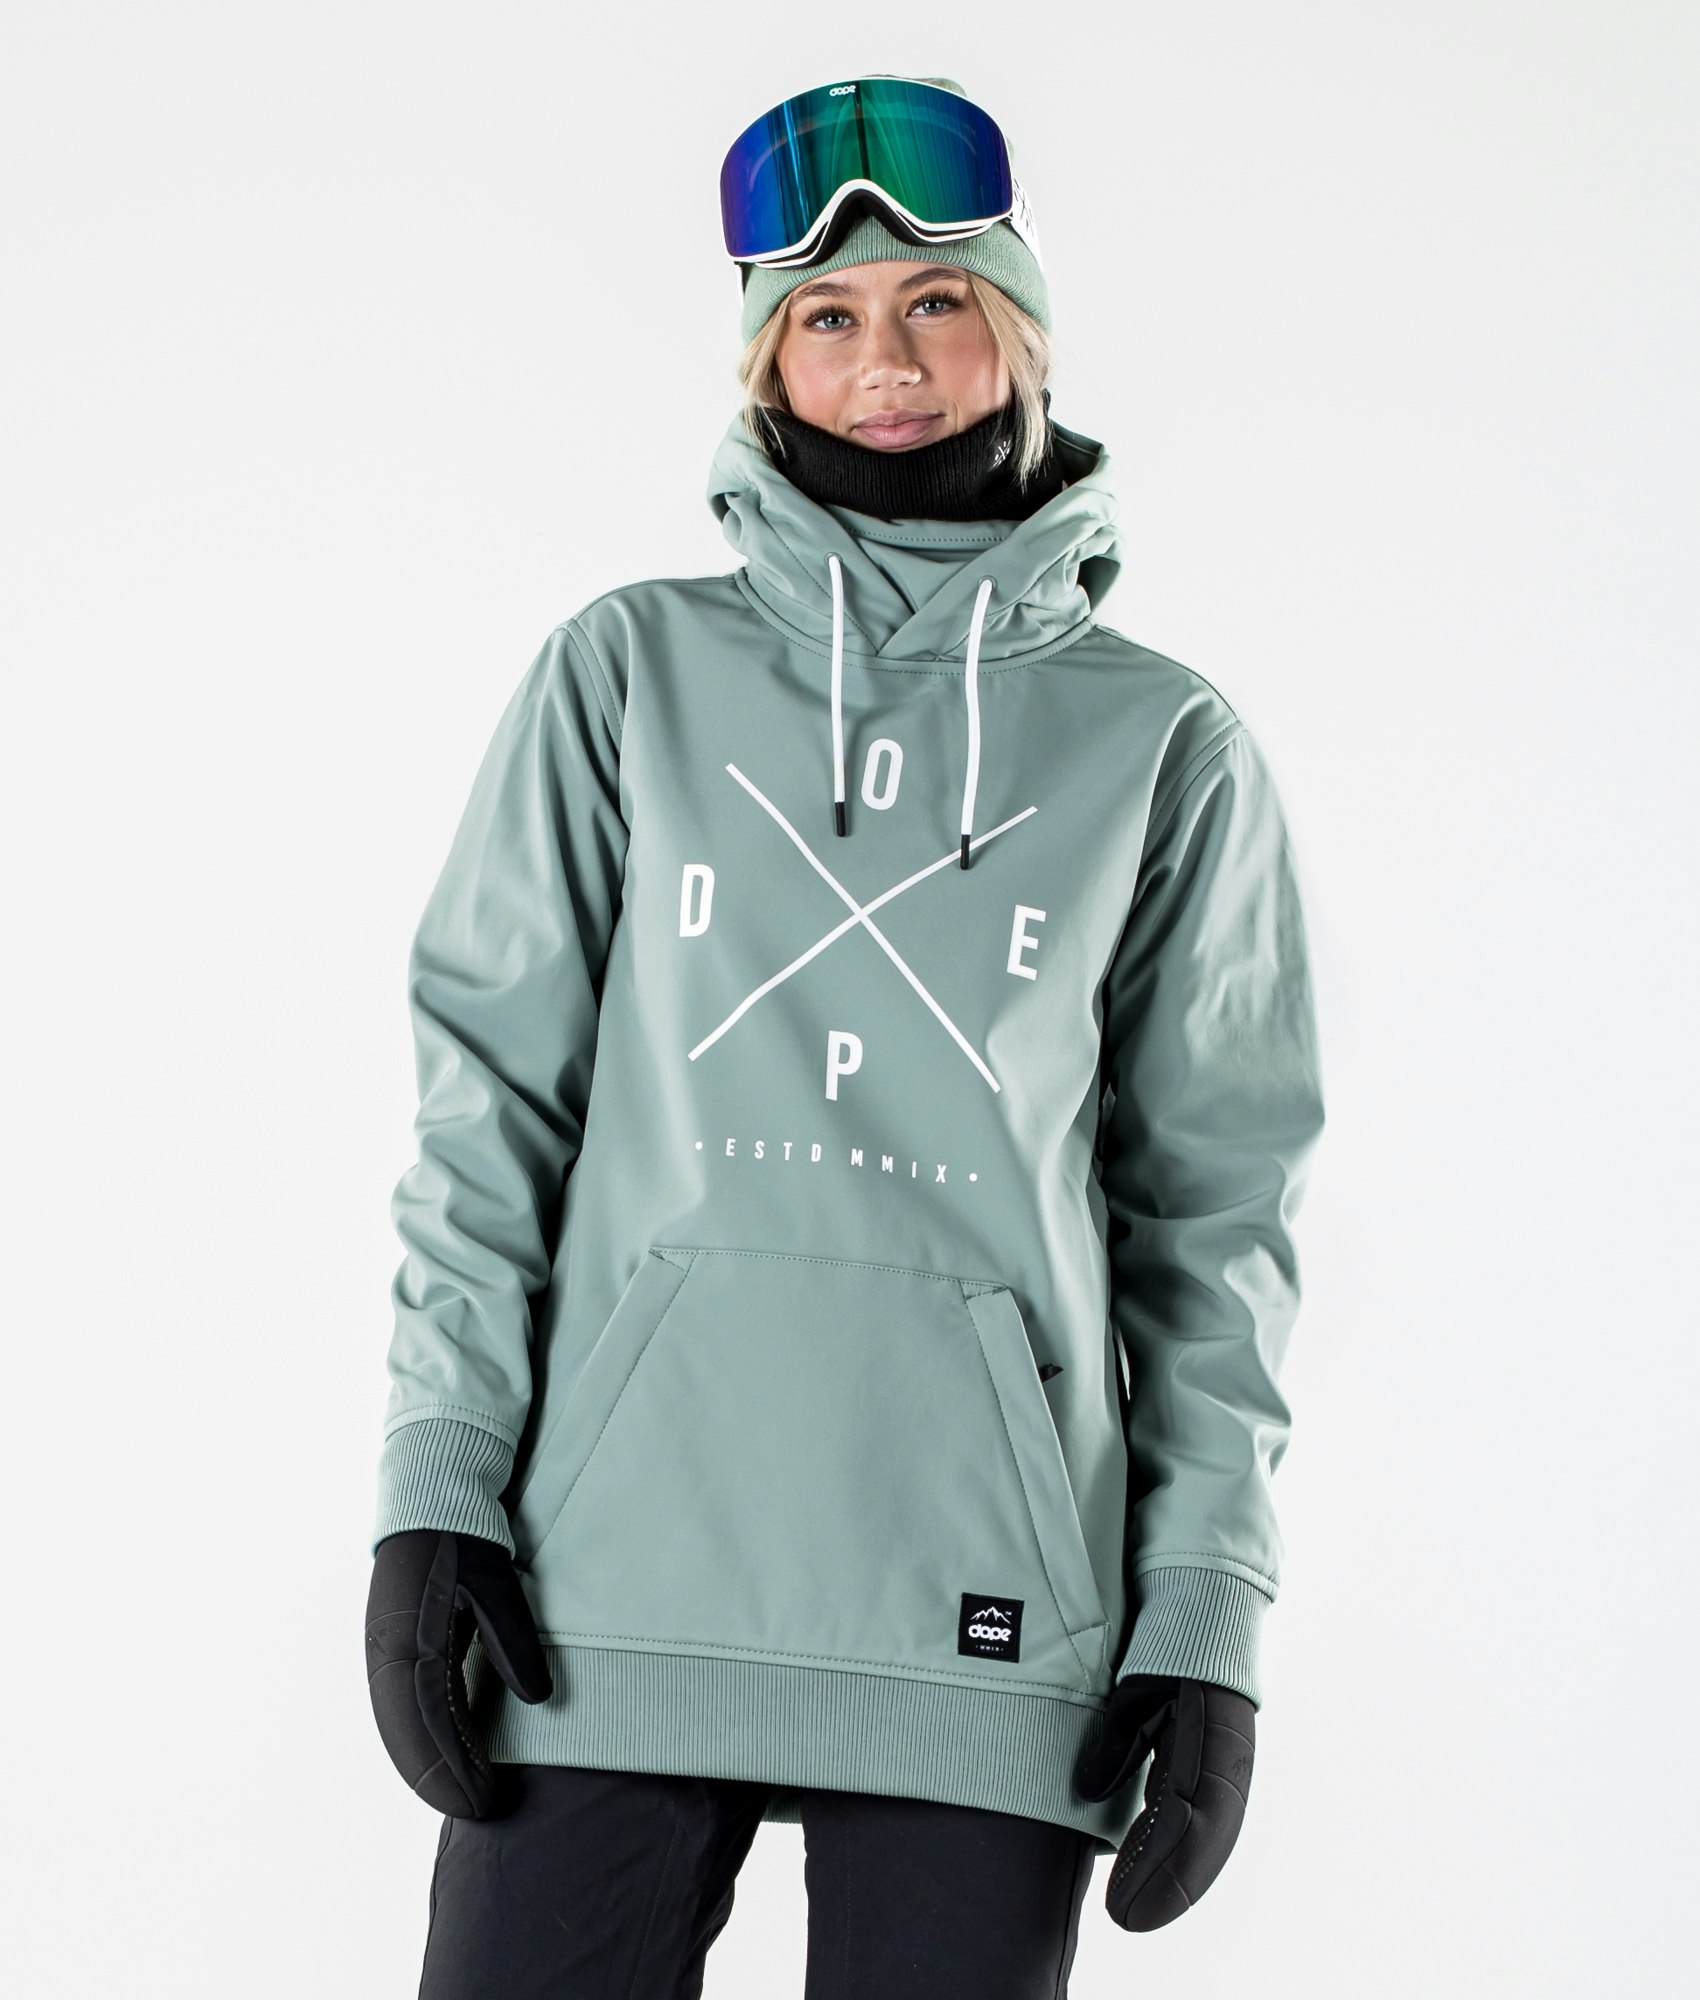 Whistler Amatoa wasserdichte Damen Skijacke W-PRO 10000 Snowboard Jacke Winterjacke Regenjacke mit Webpelz Kapuze 